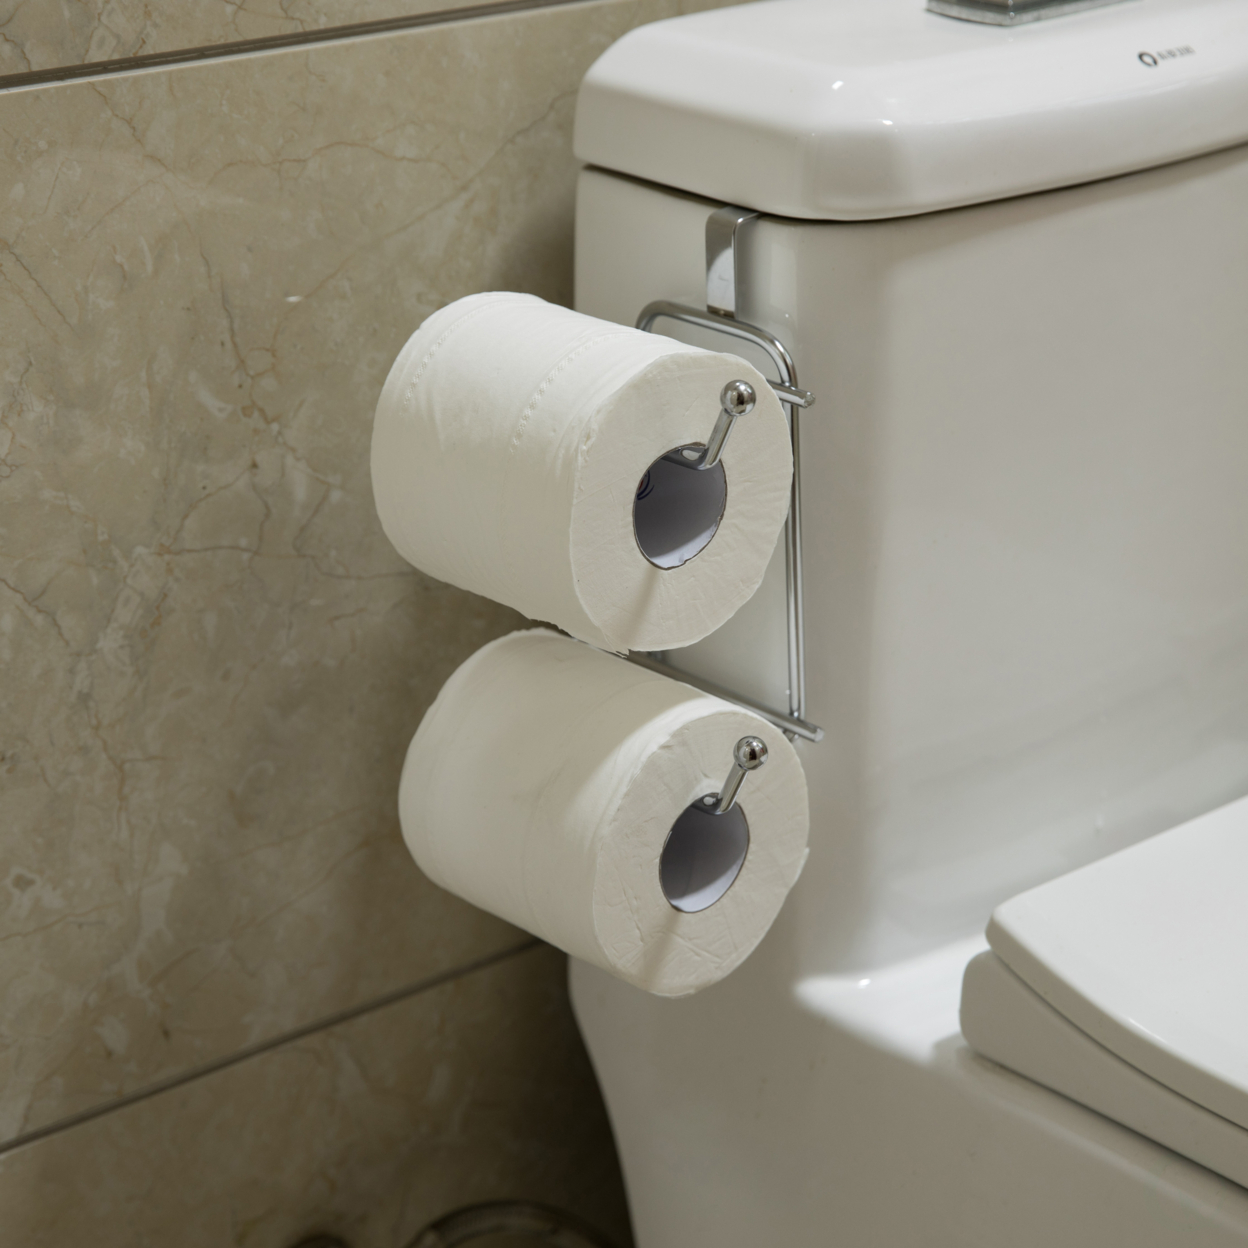 Chrome Toilet Tissue Paper Roll Holder Dispenser, Over The Tank Two Slot Tissue Organizer